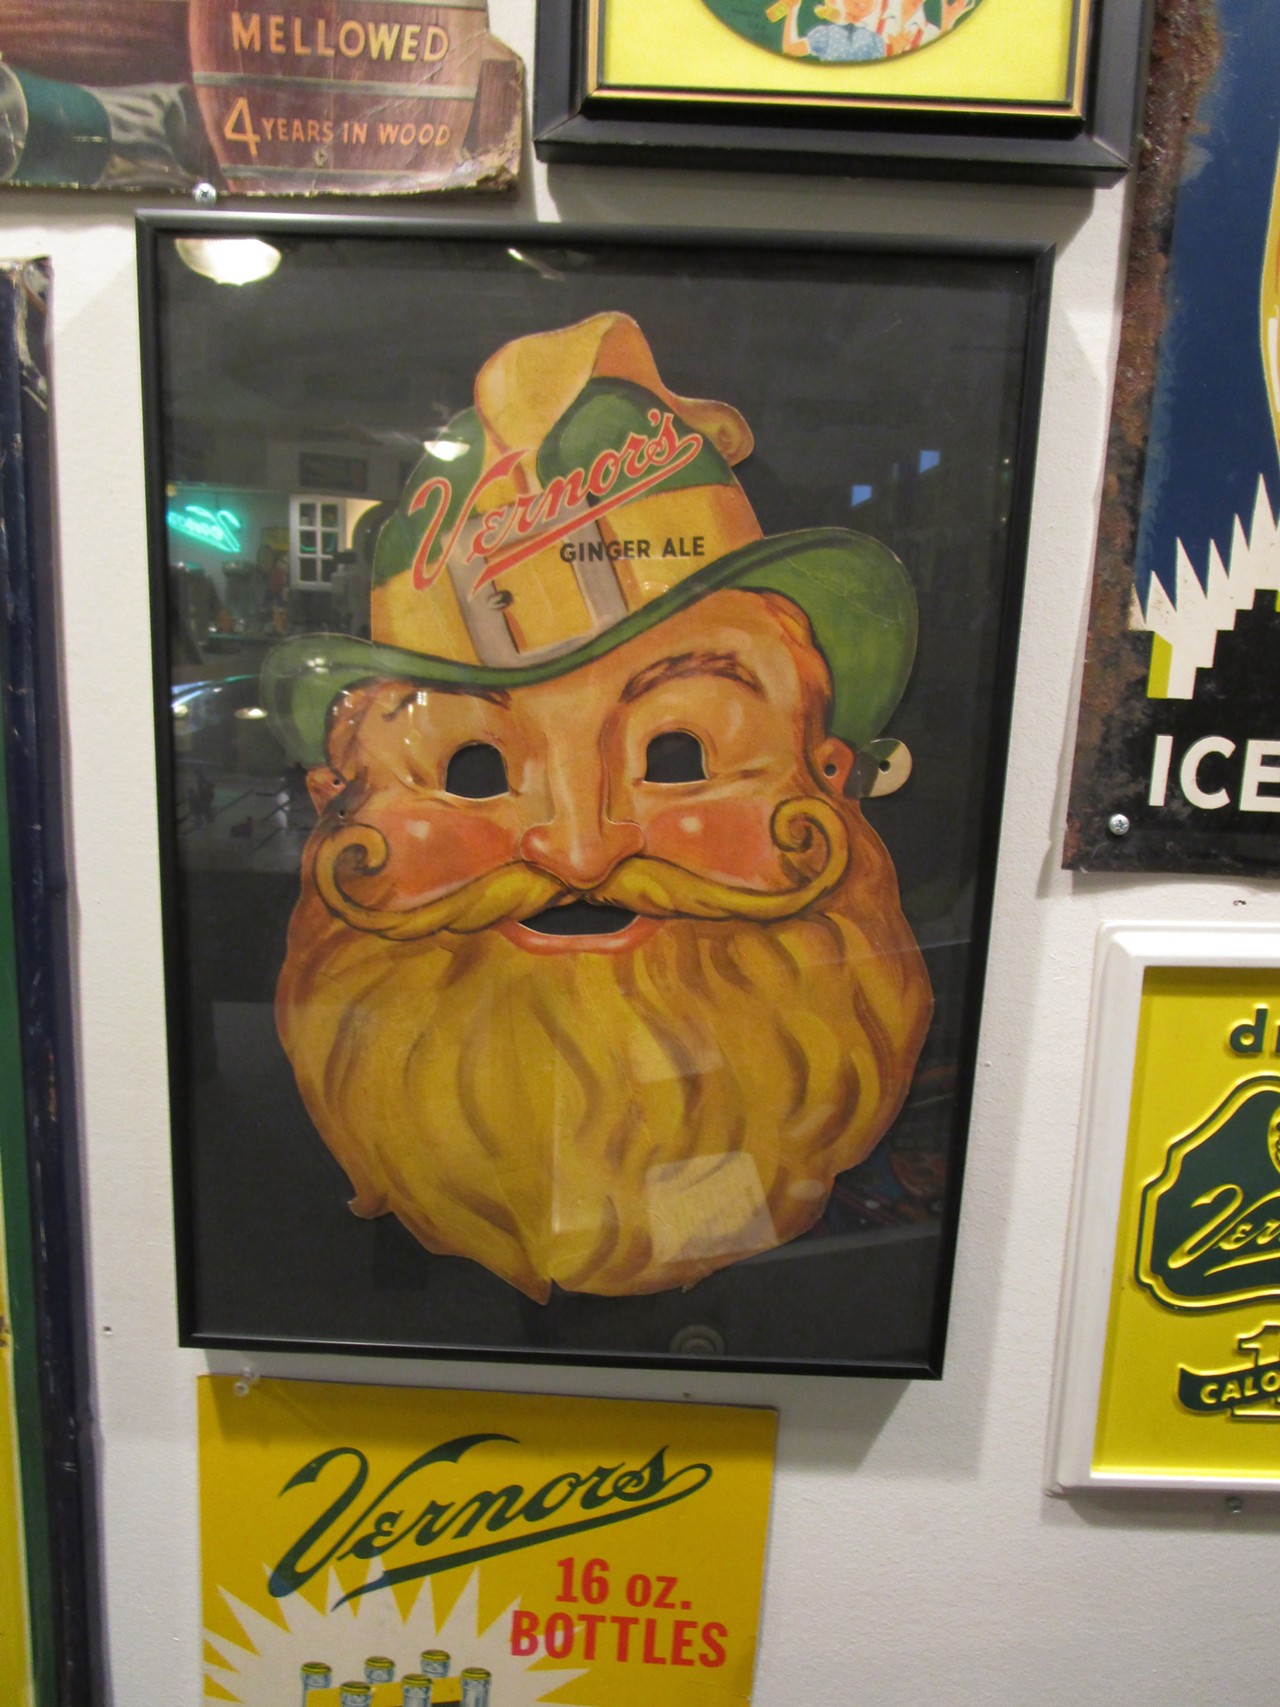 A more unusual piece: A gnome mask.